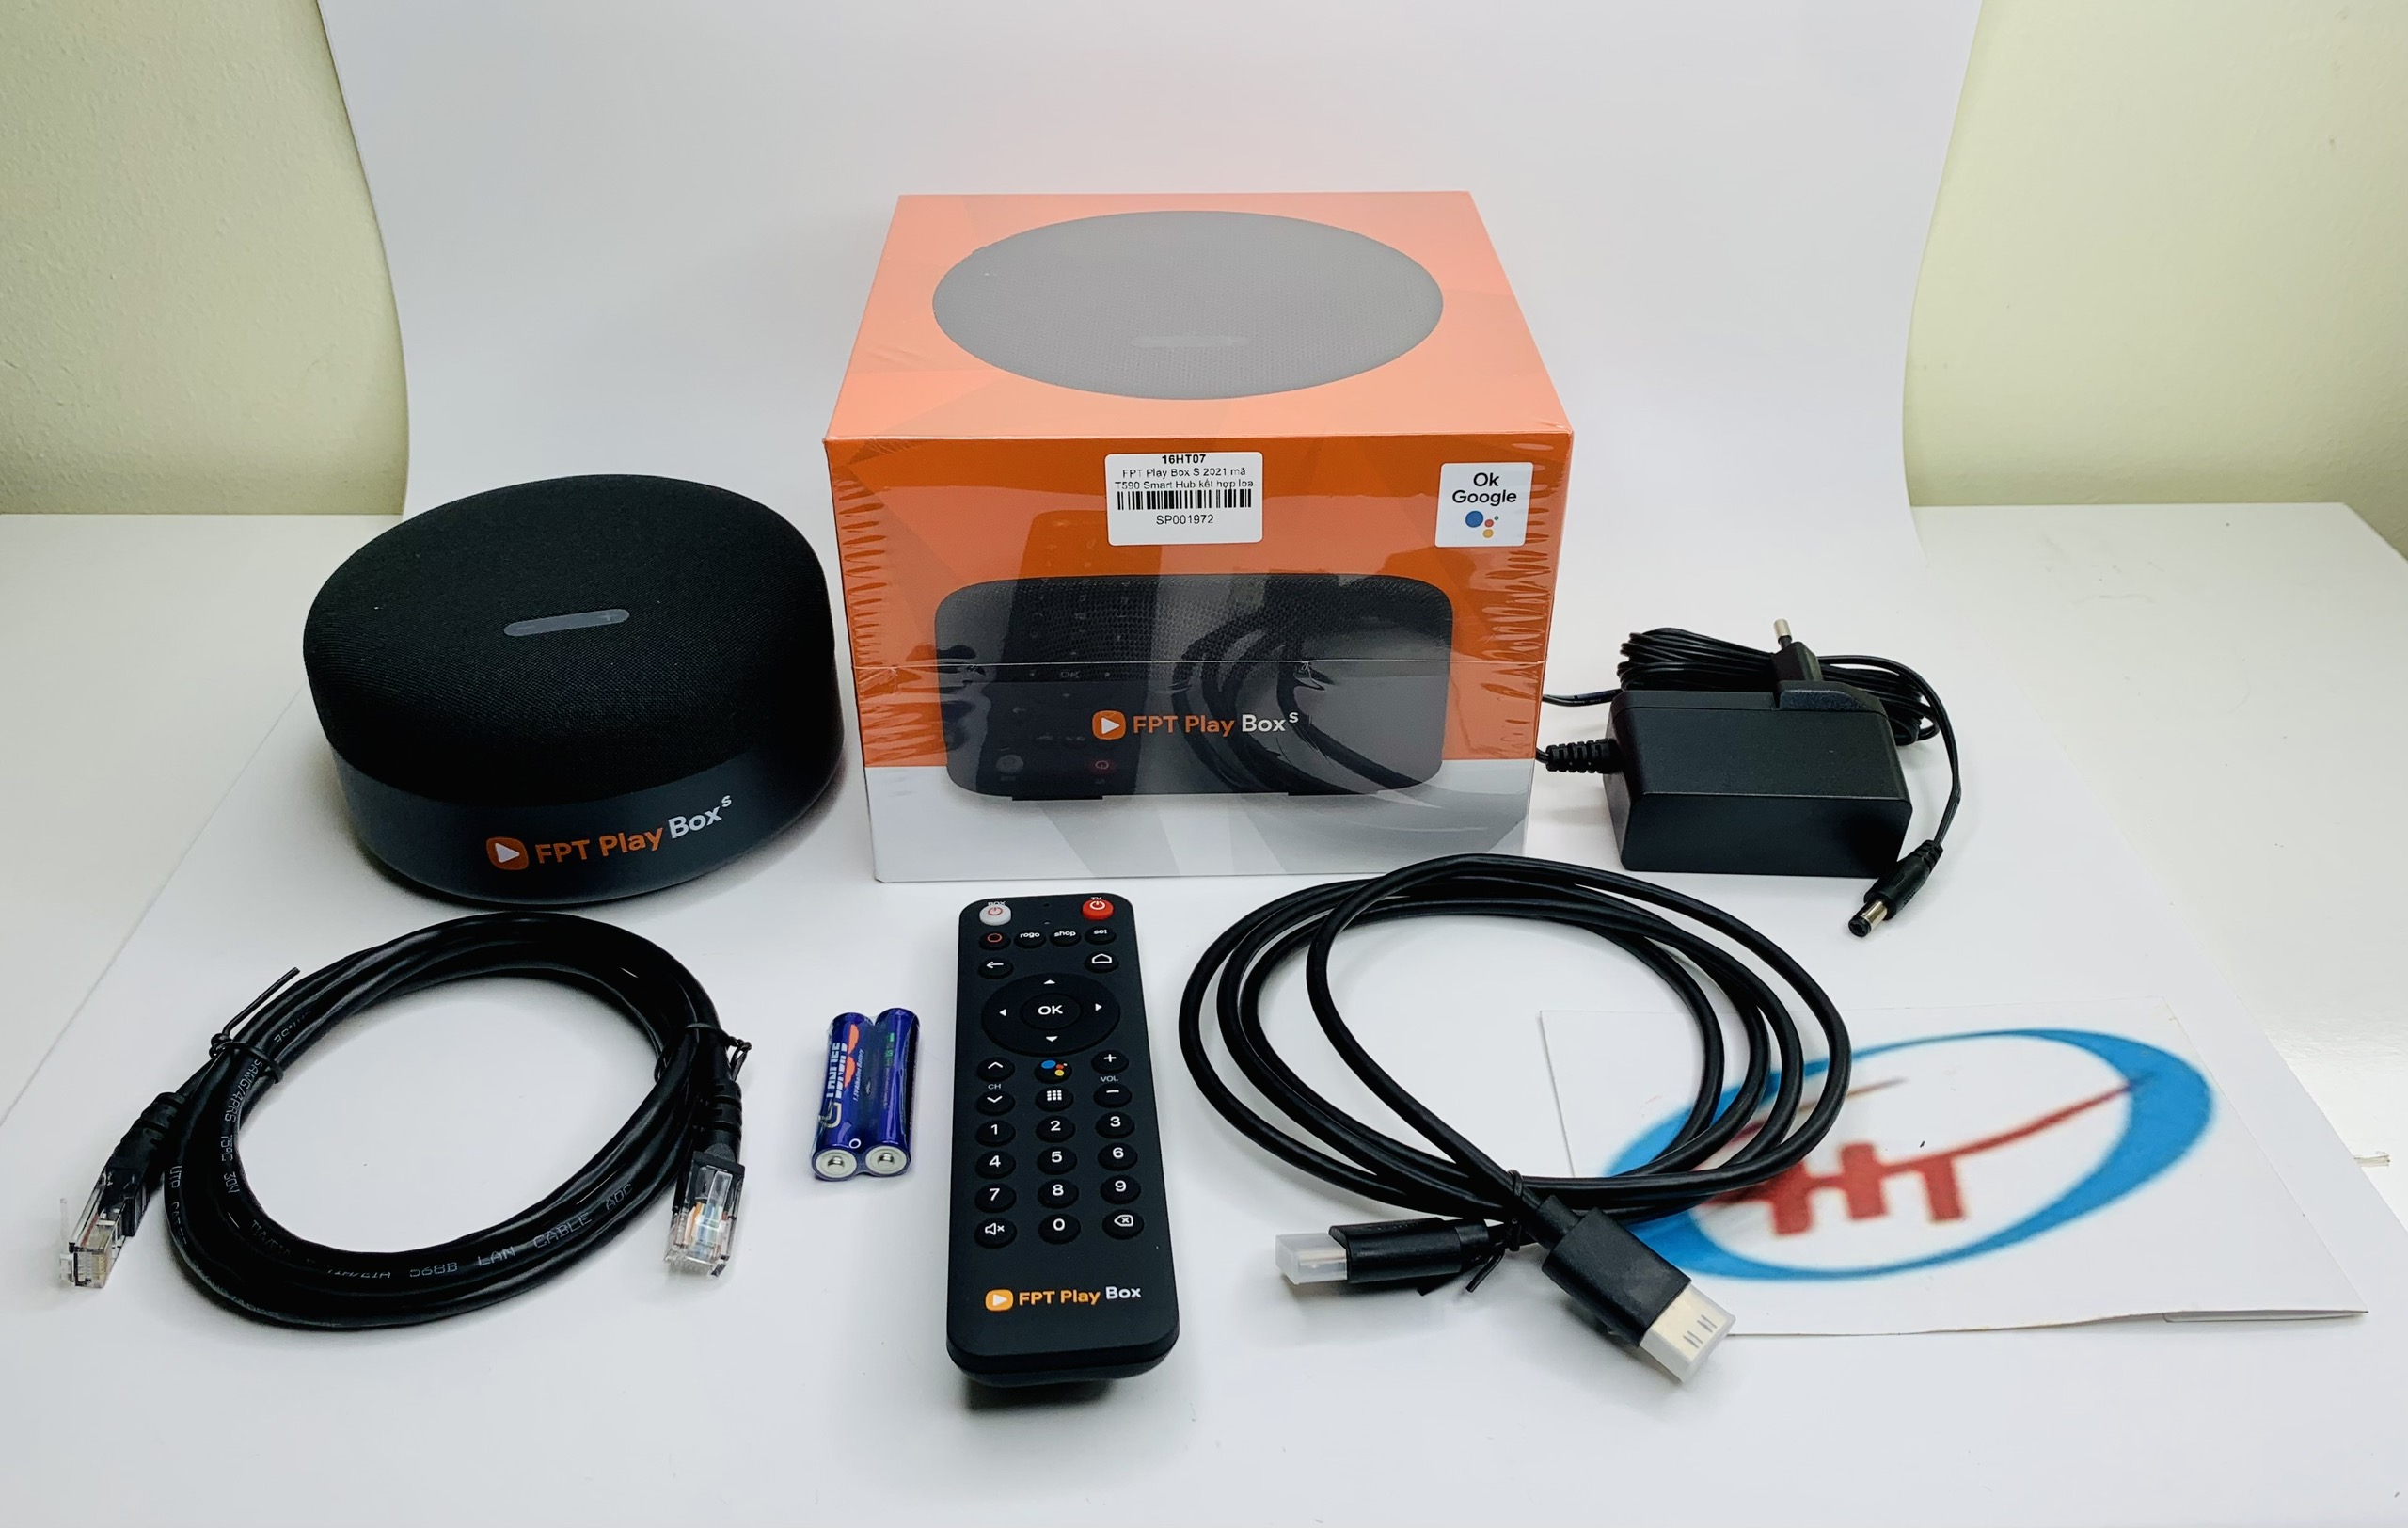 FPT Play Box S 2021 – Chính hãng FPT Telecom (Mã T590) – Kết hợp Tivi Box và Loa thông minh